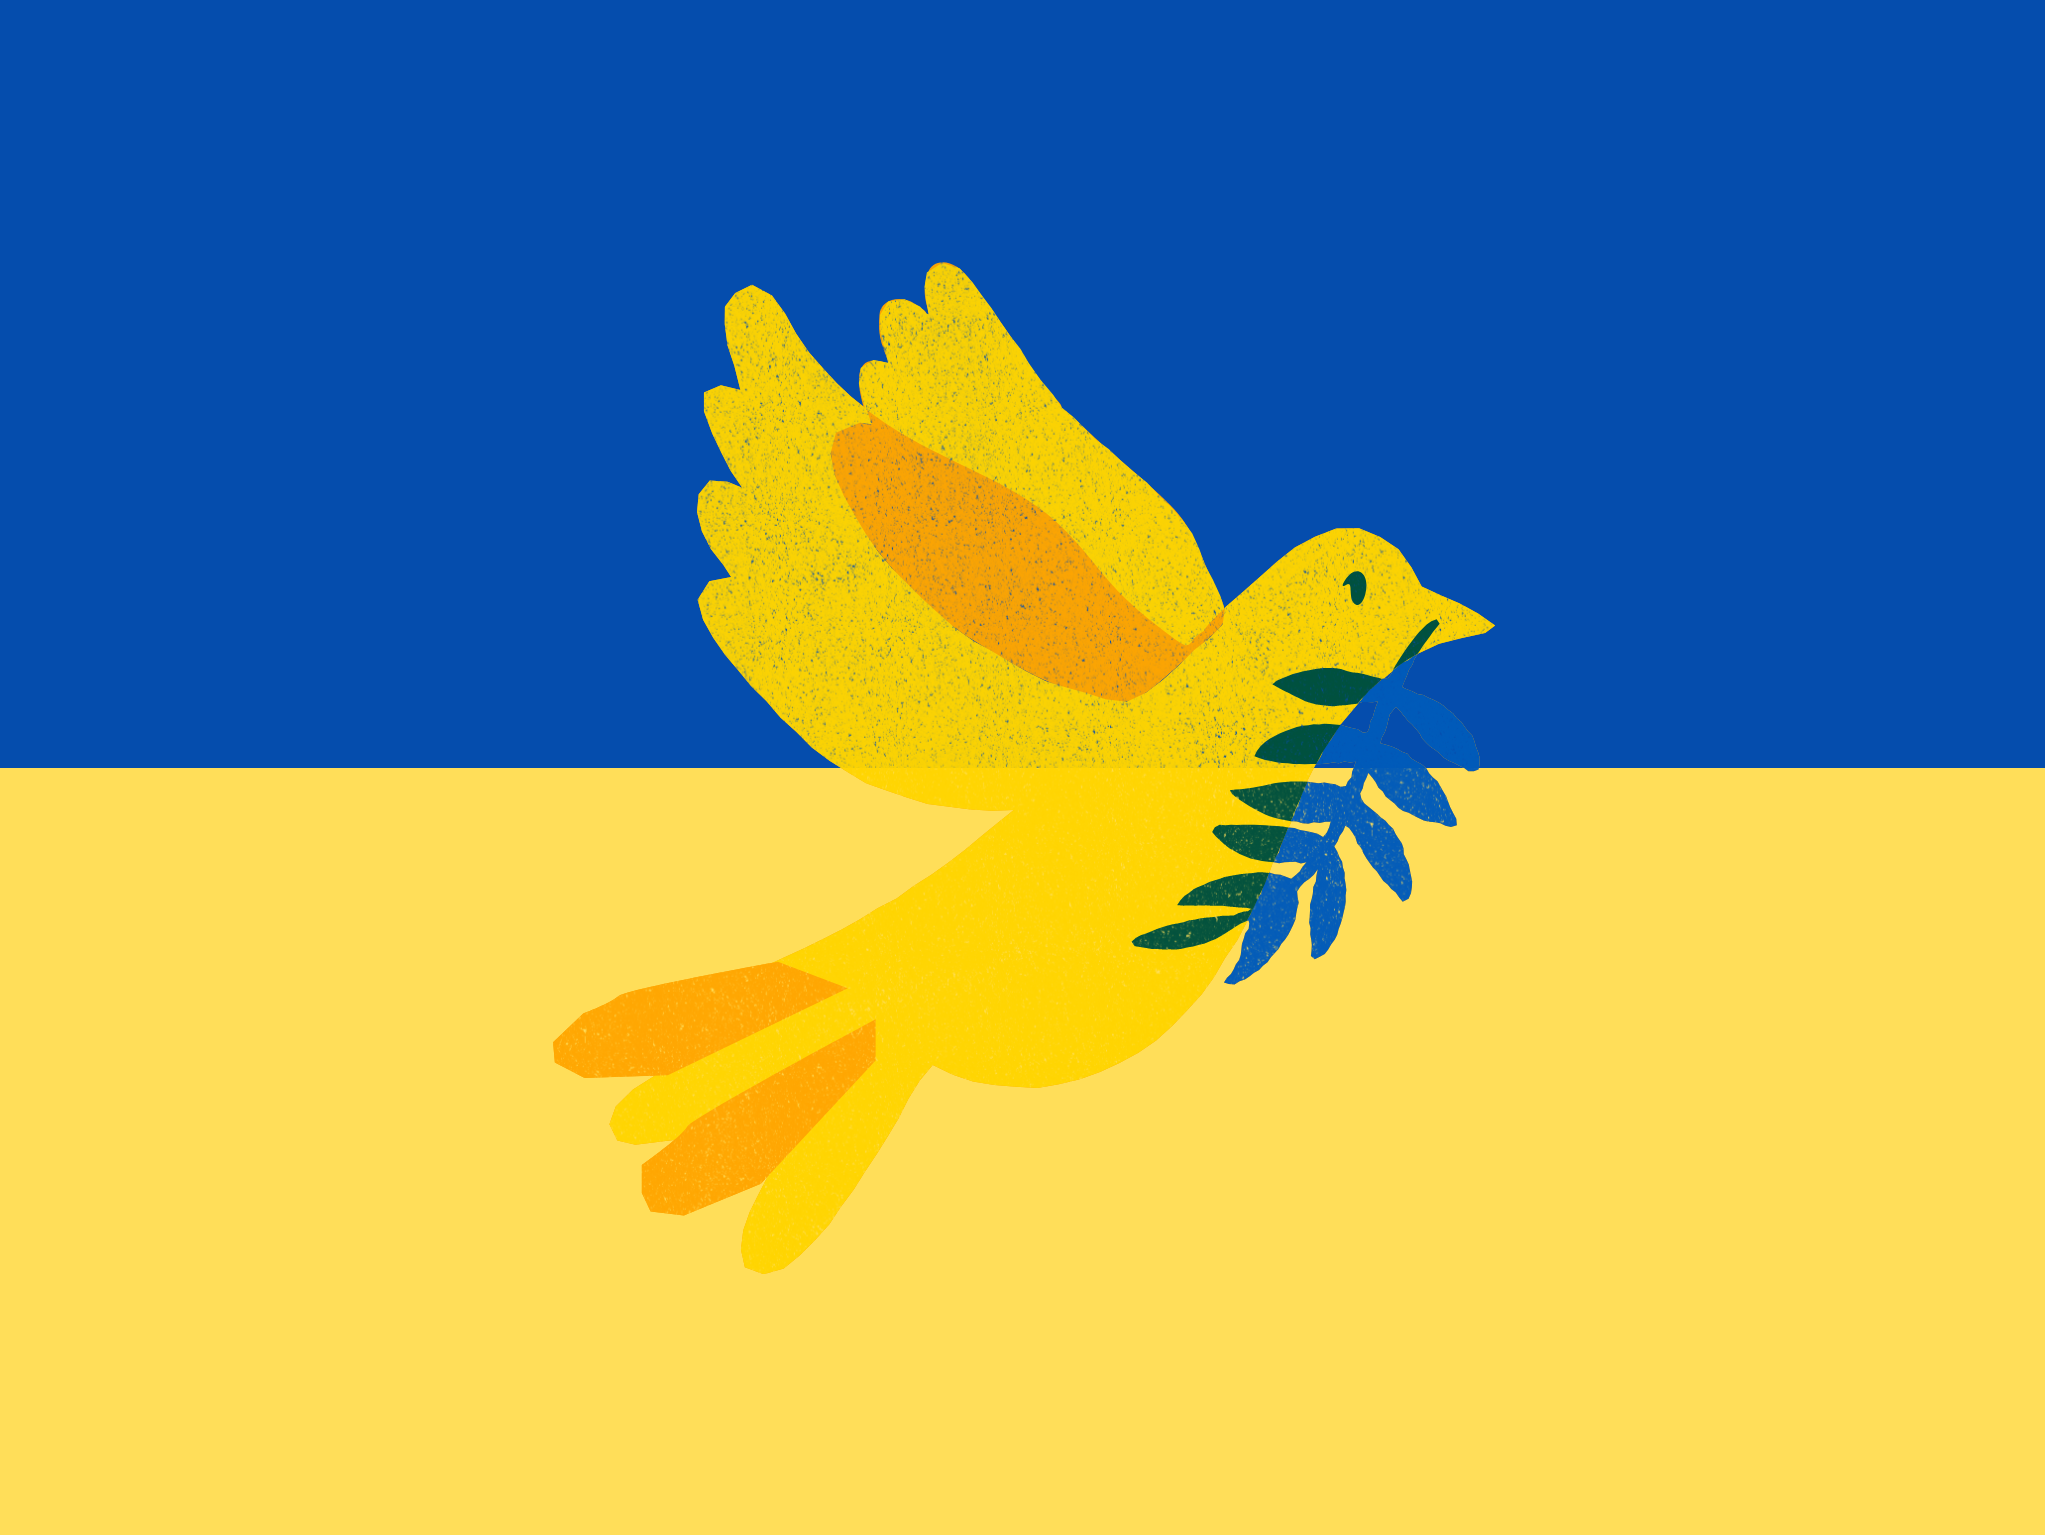 Keltainen rauhankyyhky sininen oksa nokassaan. Taustalla Ukrainan lipun värit.